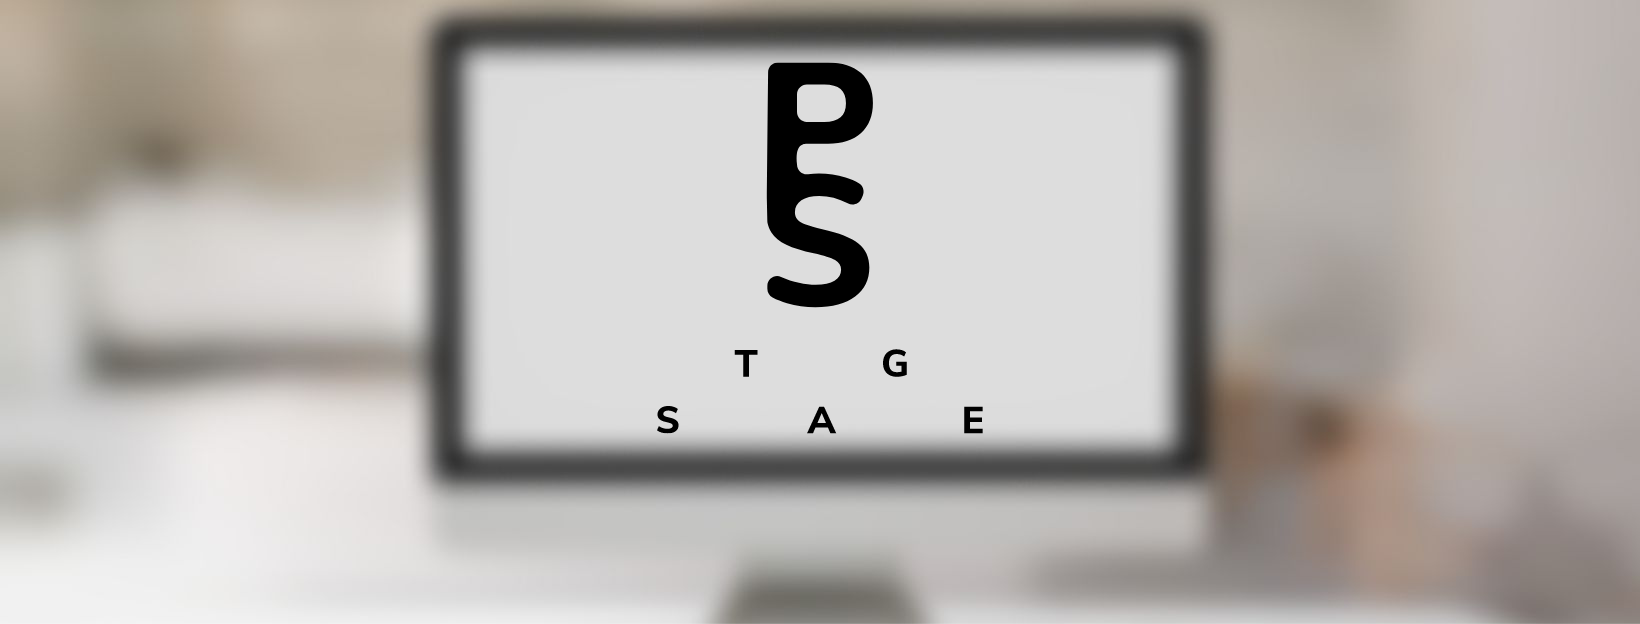 Posicionamiento SEO para PS-Stage